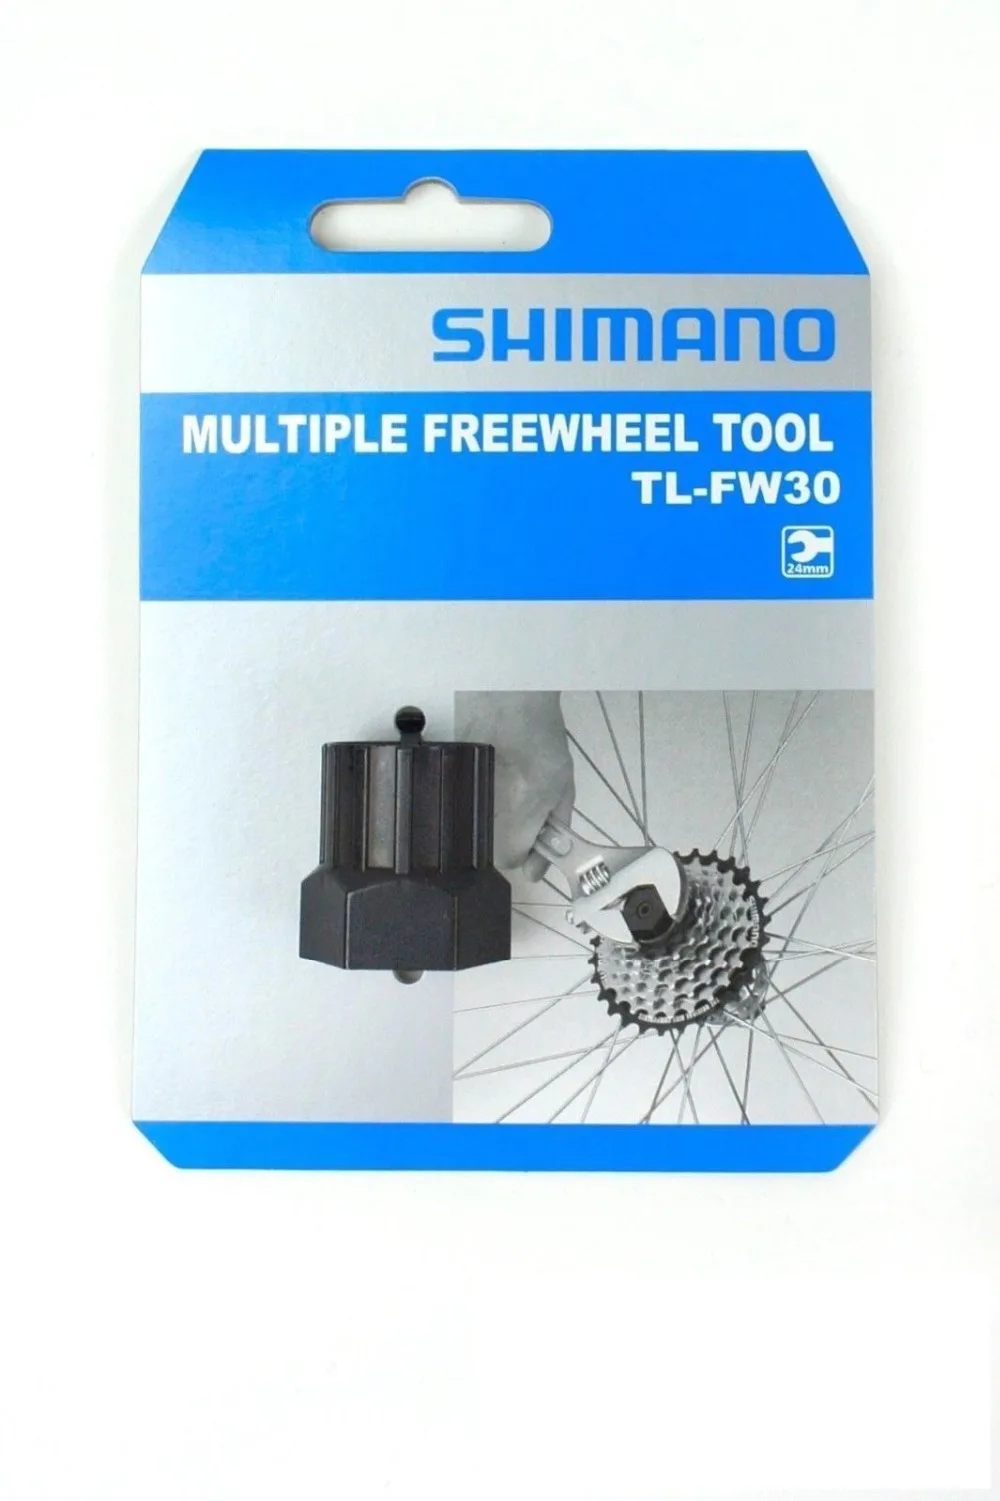 Shimano велосипедный TL-FW30 SD тип несколько свободного хода удаление велосипед инструмент